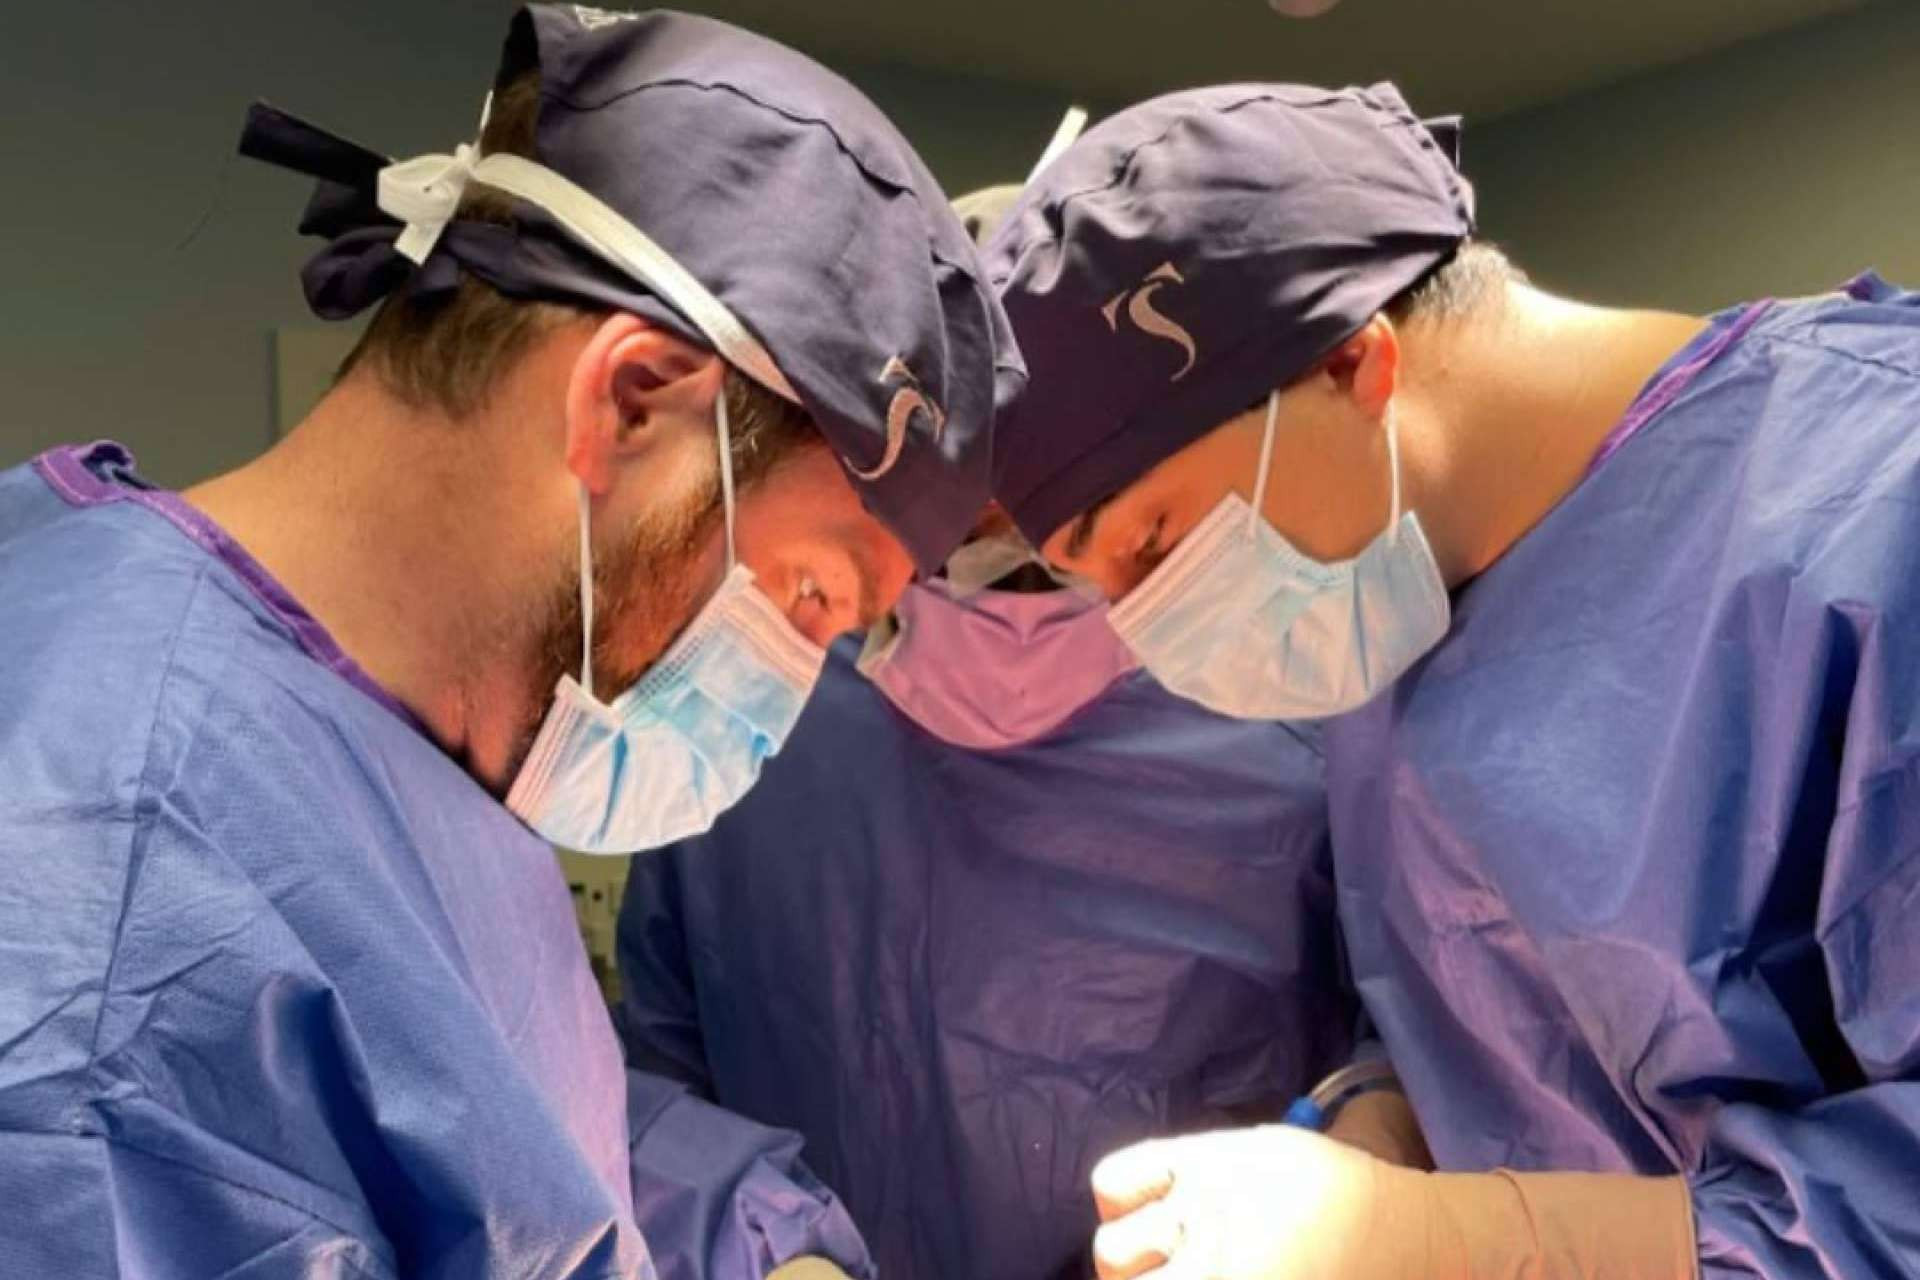  El Doctor Soler realiza con éxito la primera cirugía de prótesis de cadera bilateral en España mediante la técnica Directo Superior mínimamente invasivo 